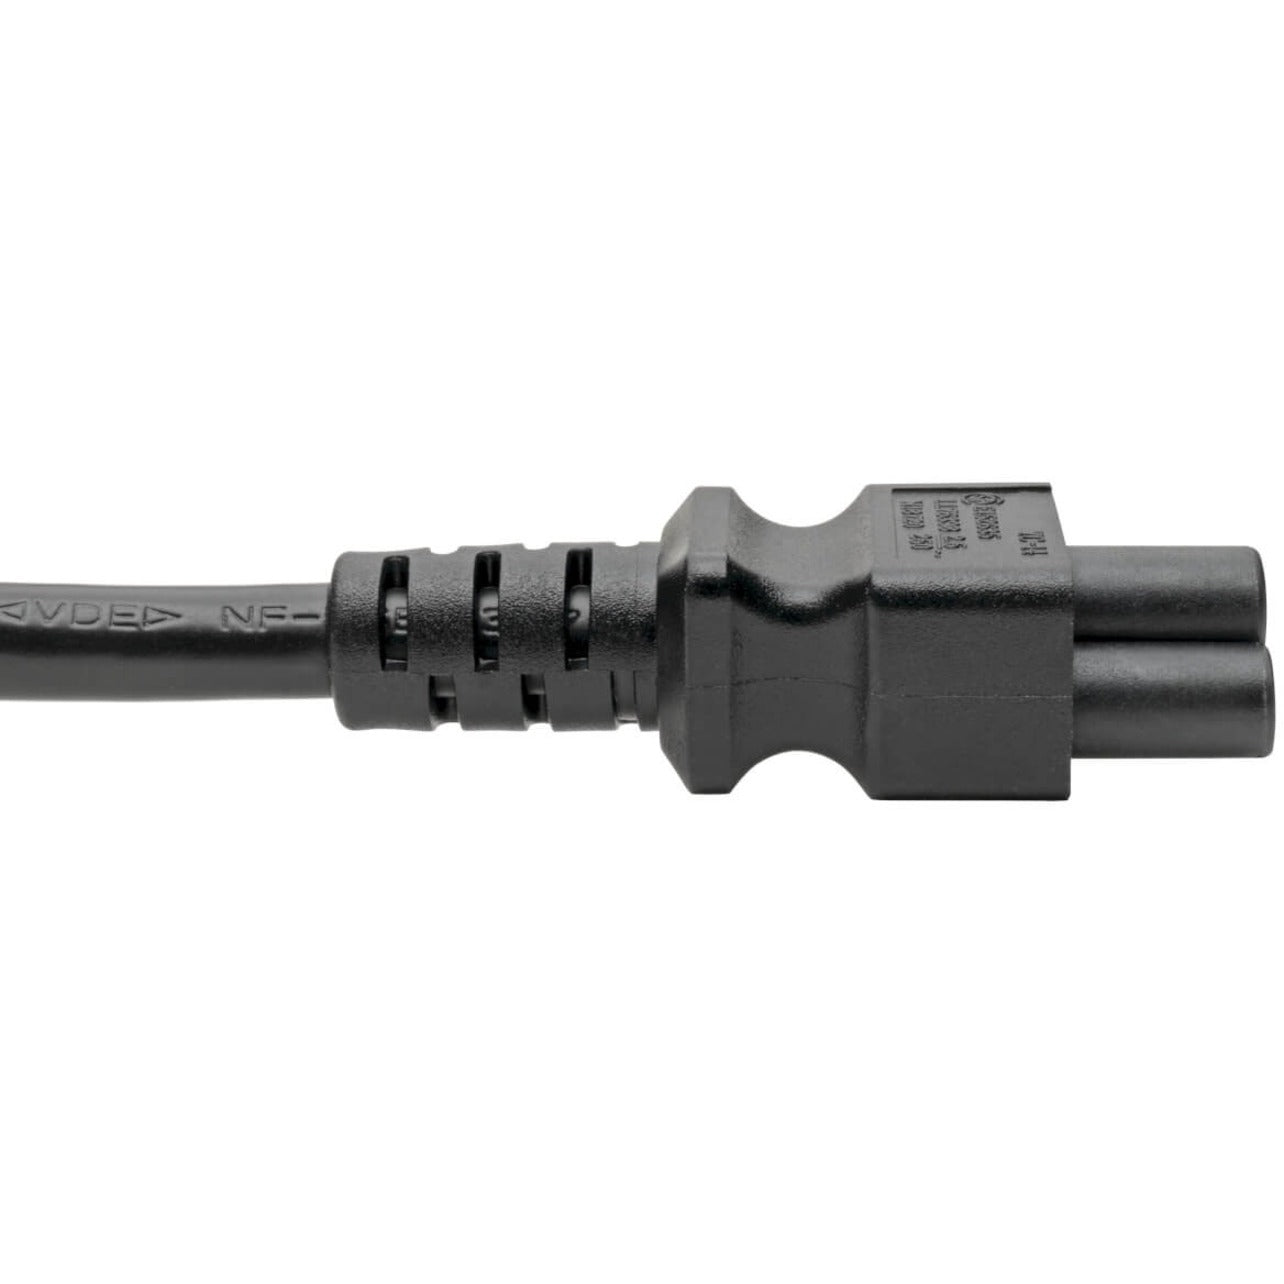 Tripp Lite P014-006 Standard Power Cord, 6 ft, 2.50 A, 120 V AC, 230 V AC